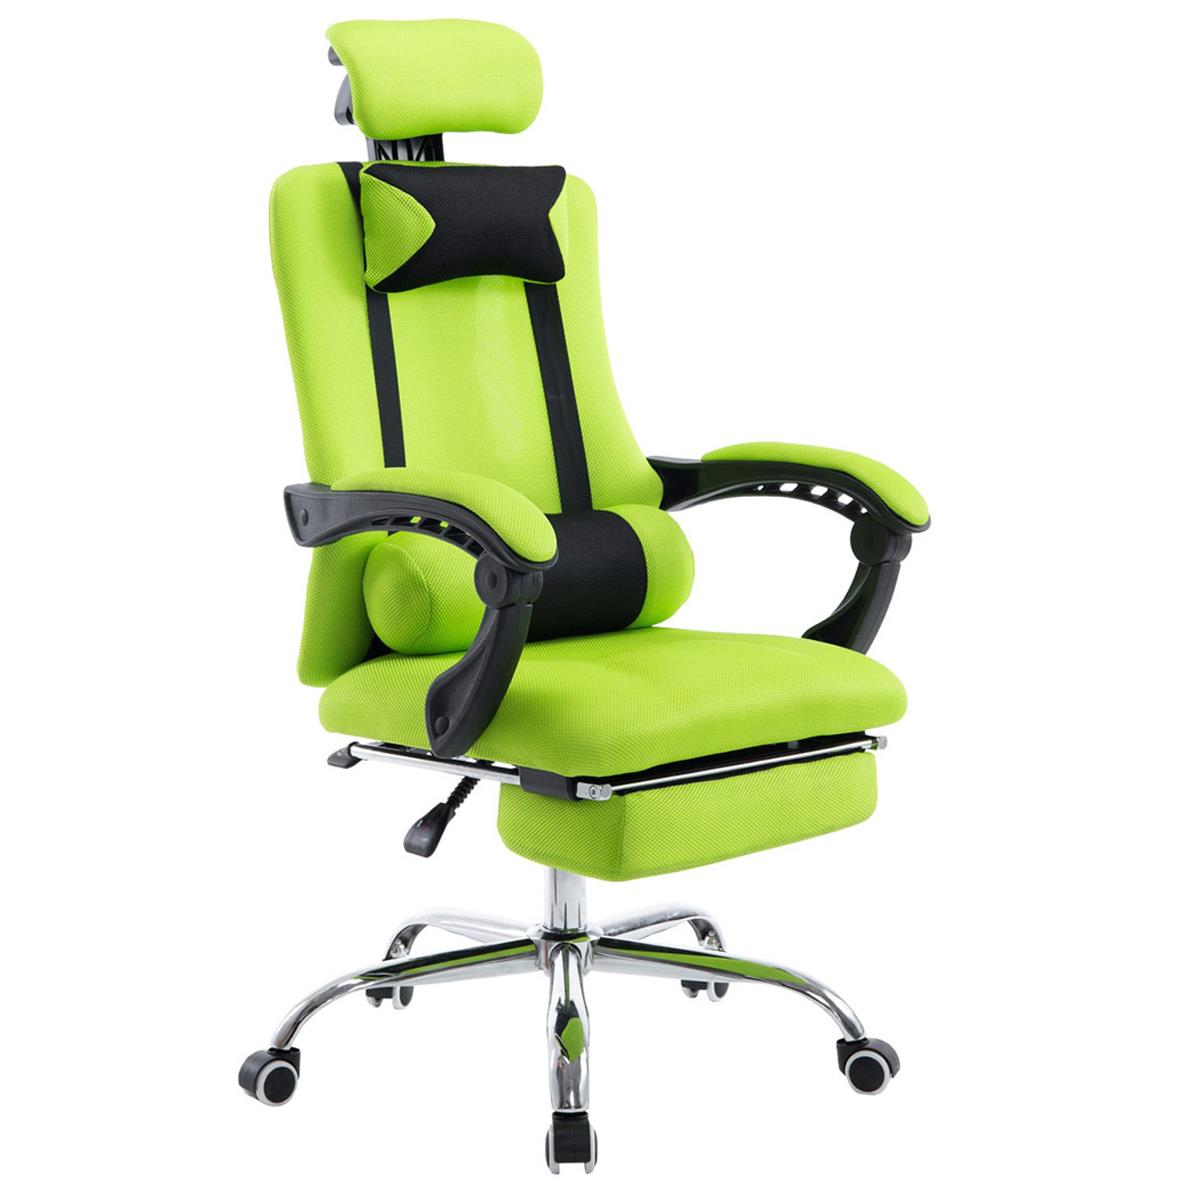 Gaming-Stuhl ANTARES, ausziehbare Fußablage, atmungsaktiver Netzbezug, Farbe Grün